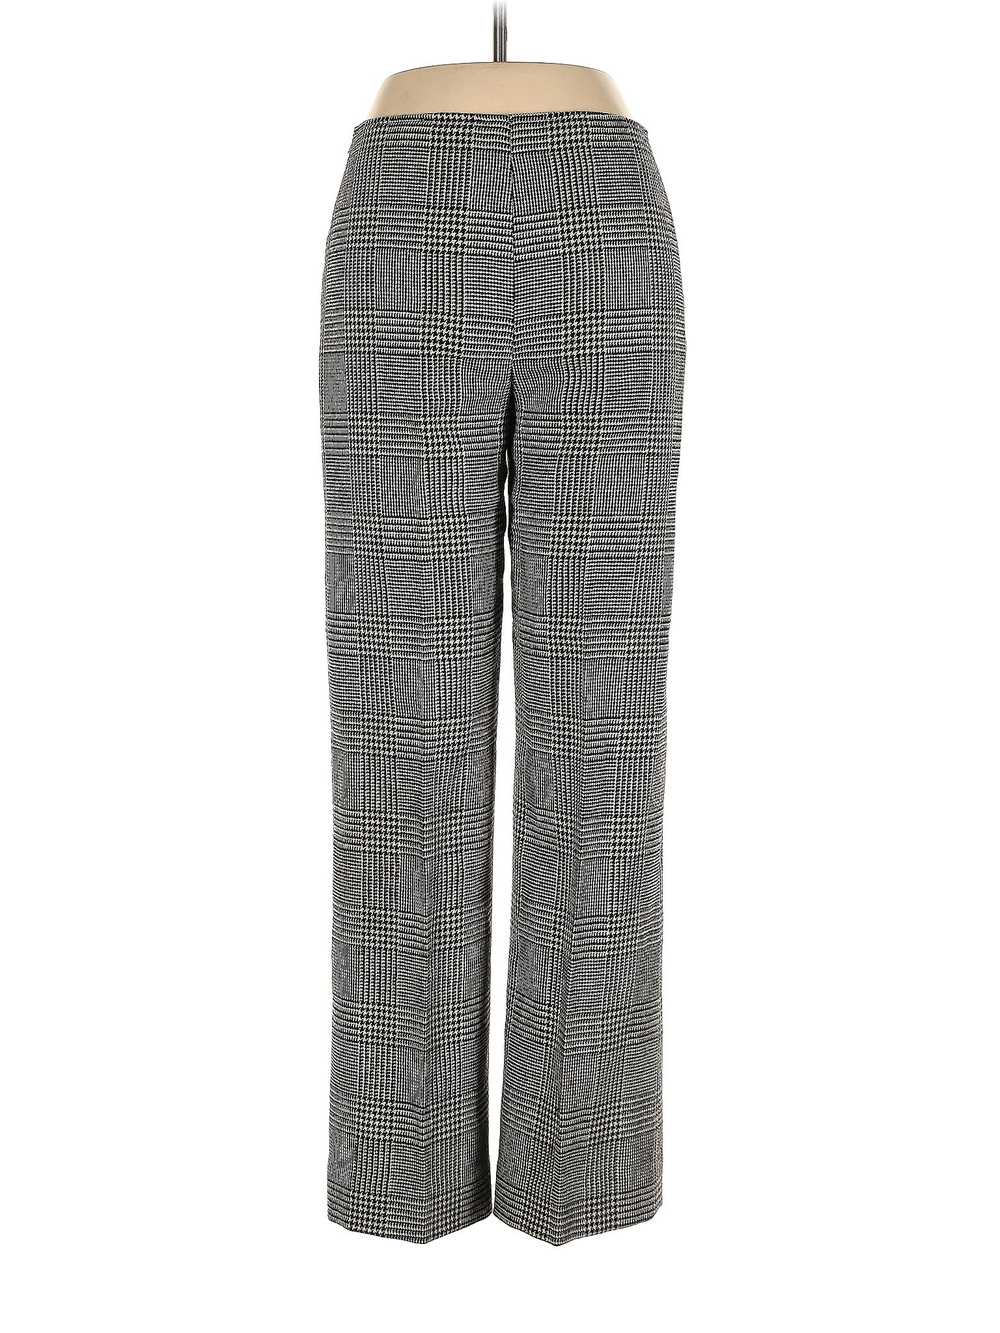 Anne Klein Women Gray Dress Pants 6 - image 1